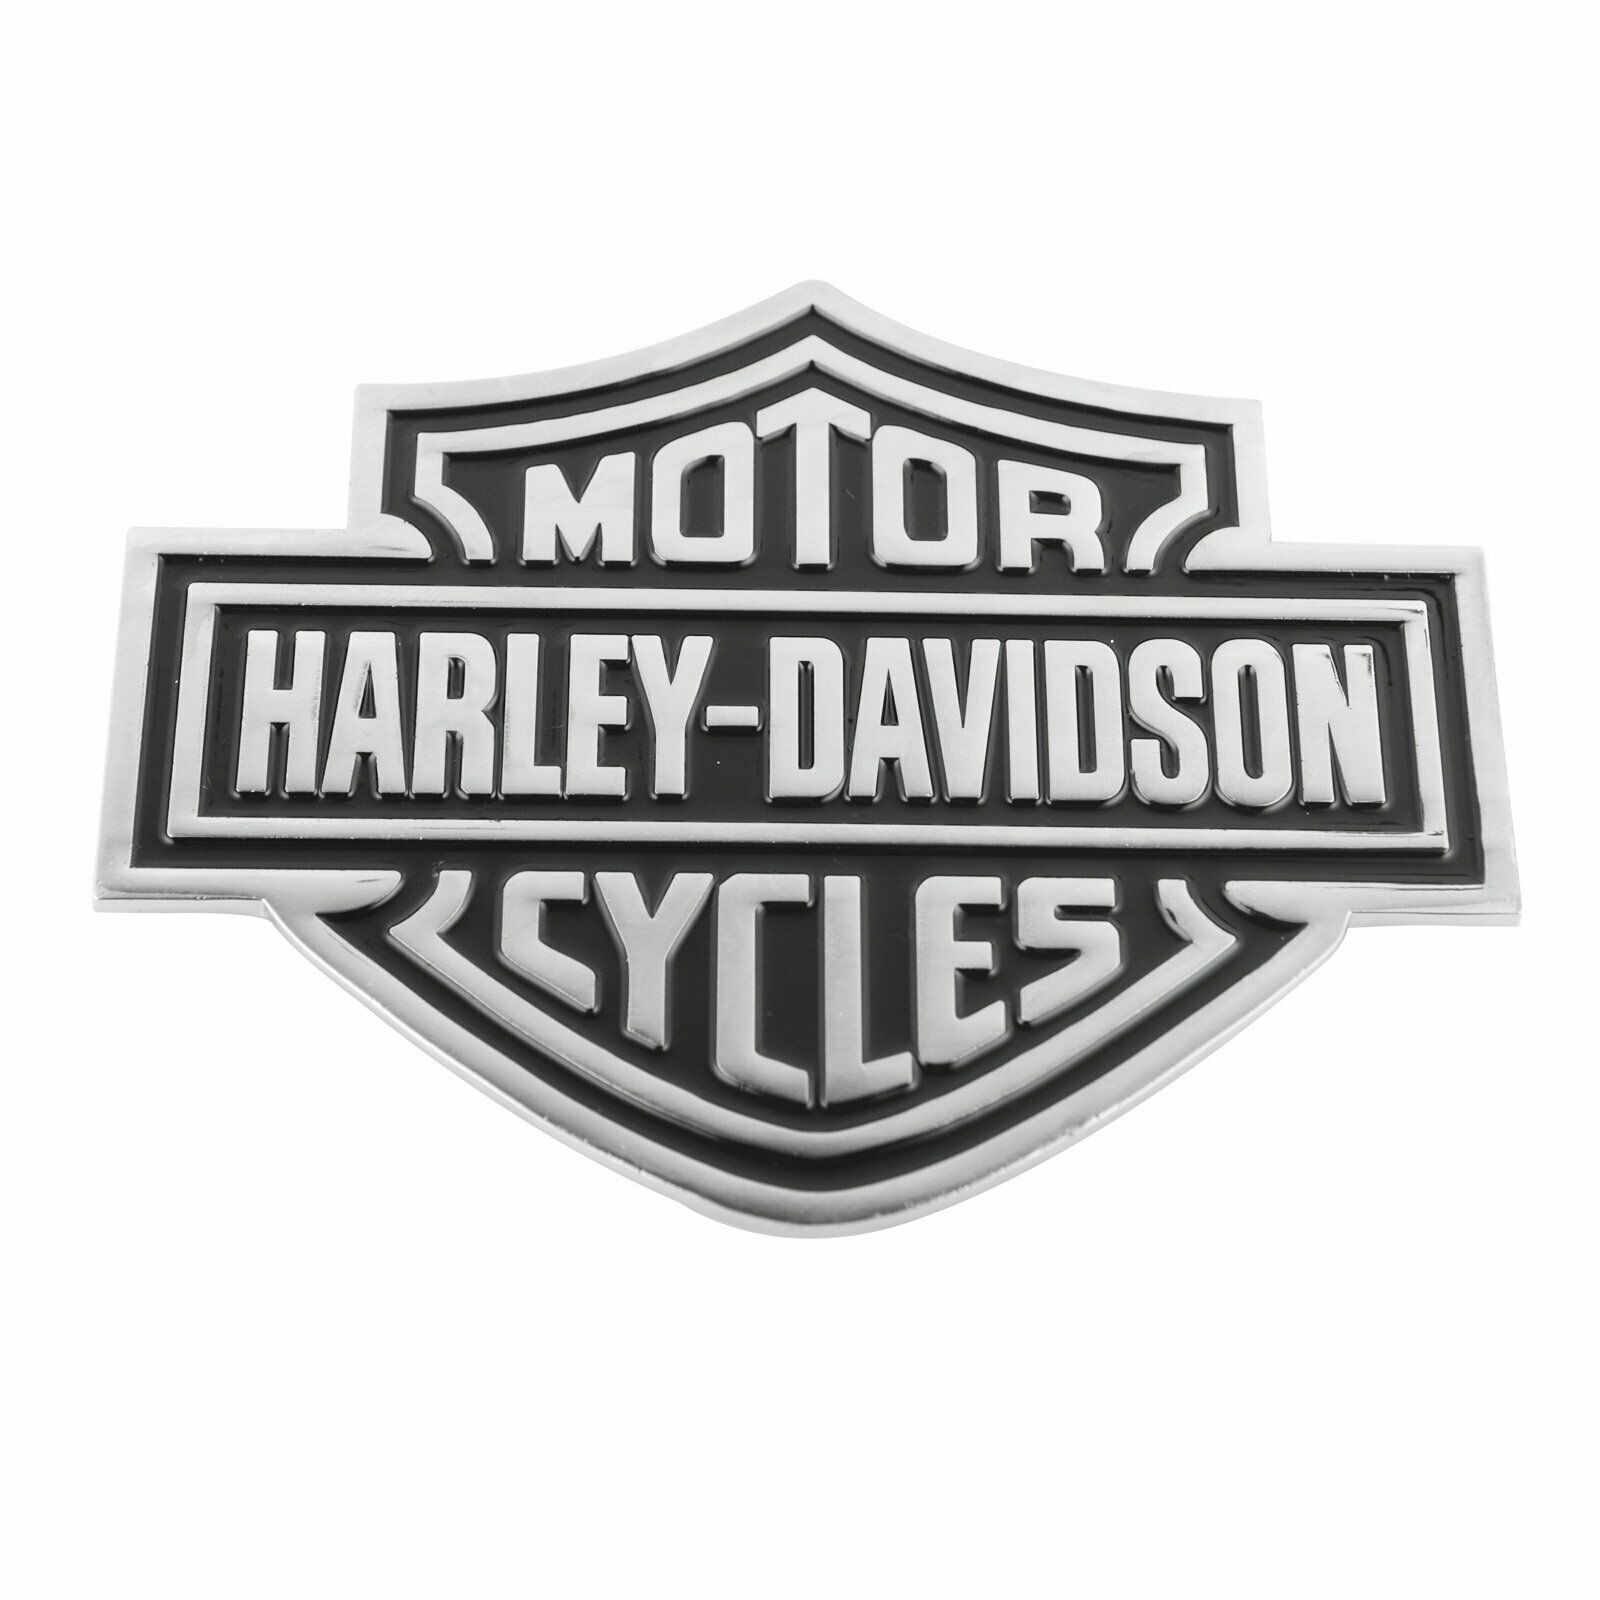 Detail Harley Davidson Emblem Pictures Nomer 19